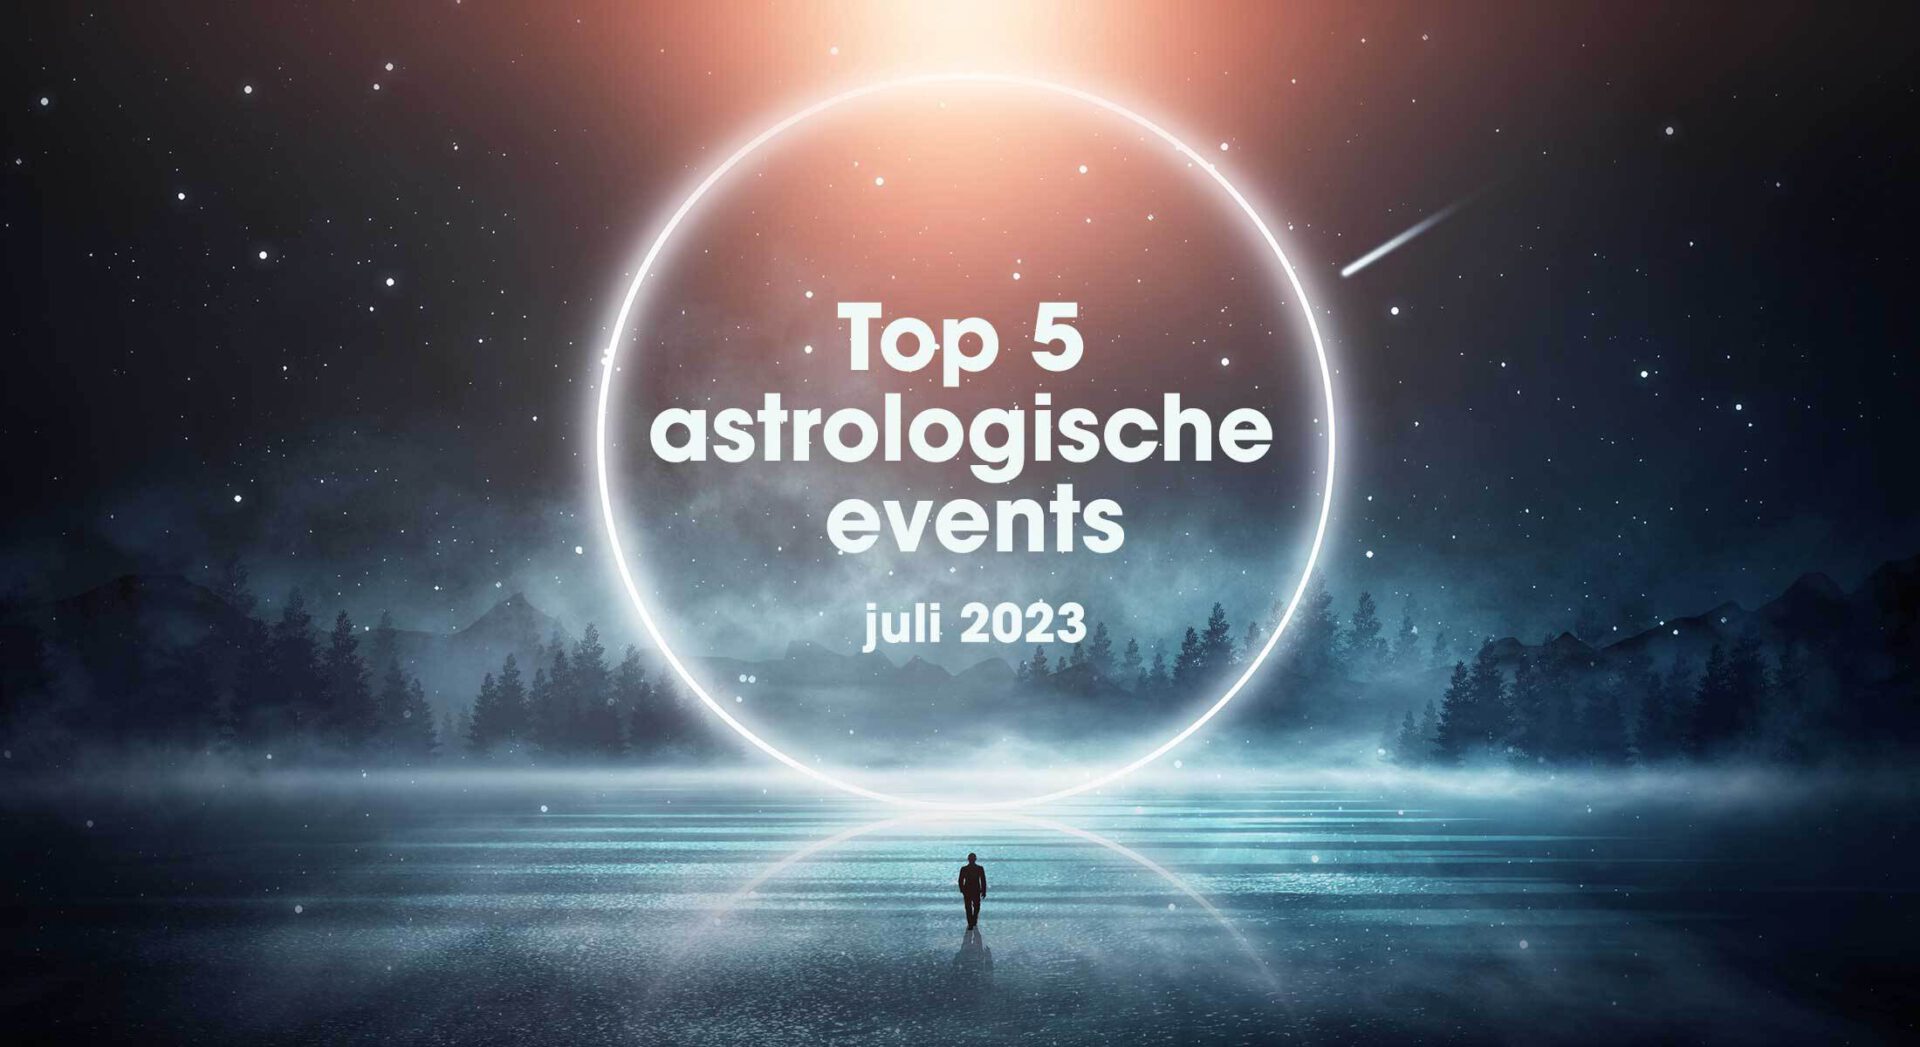 De top 5 astrologische gebeurtenissen in juli 2023